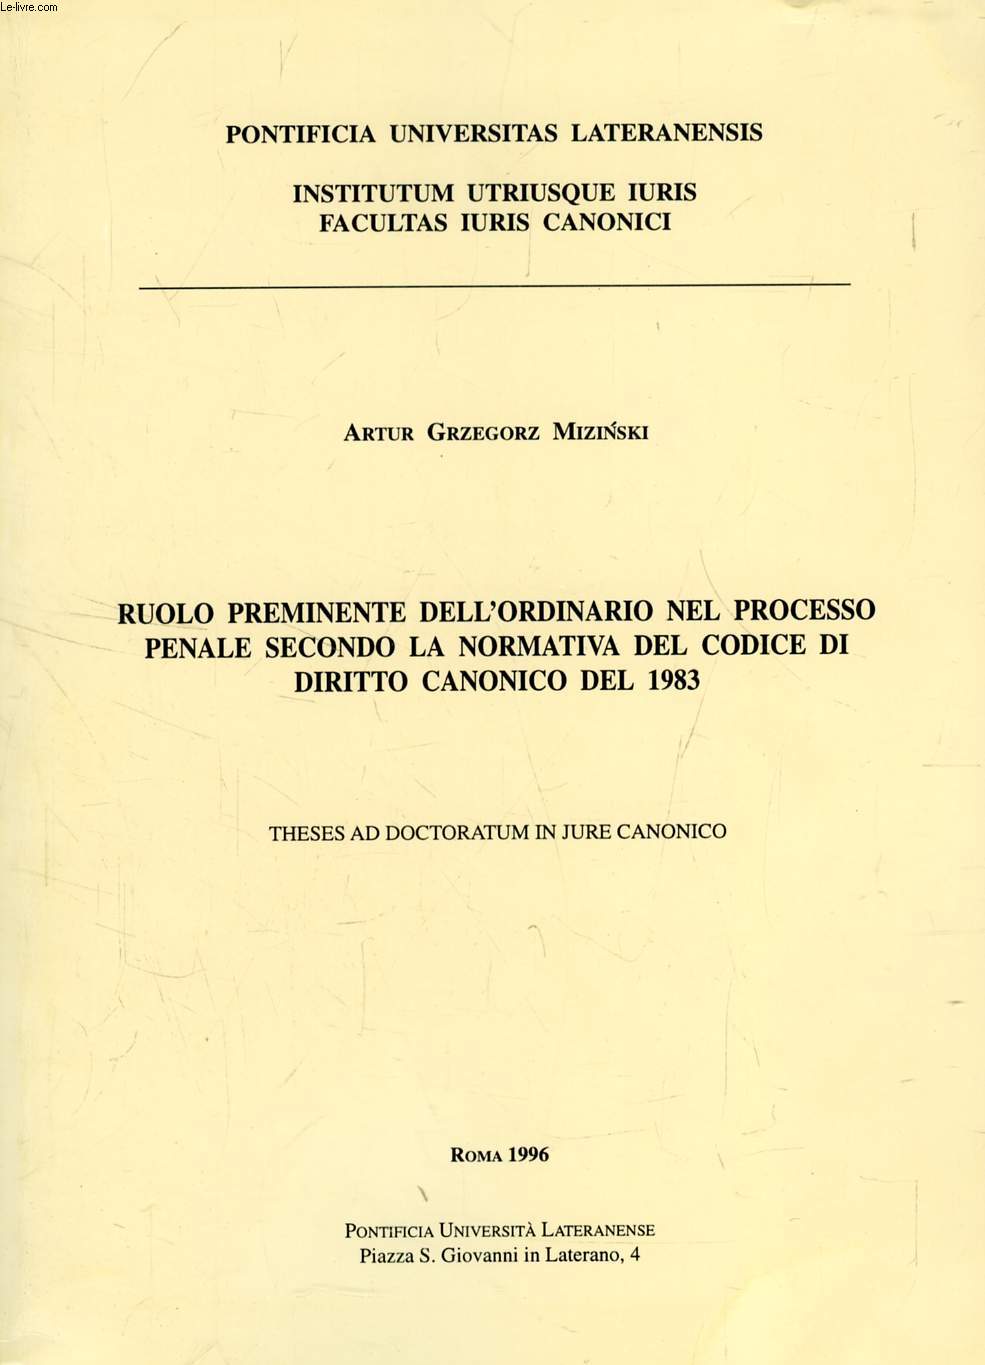 RUOLO PREMINENTE DELL'ORDINARIO NEL PROCESSO PENALE SECONDO LA NORMATIVA DEL CODICE DI DIRITTO CANONICO DEL 1983 (TESI)